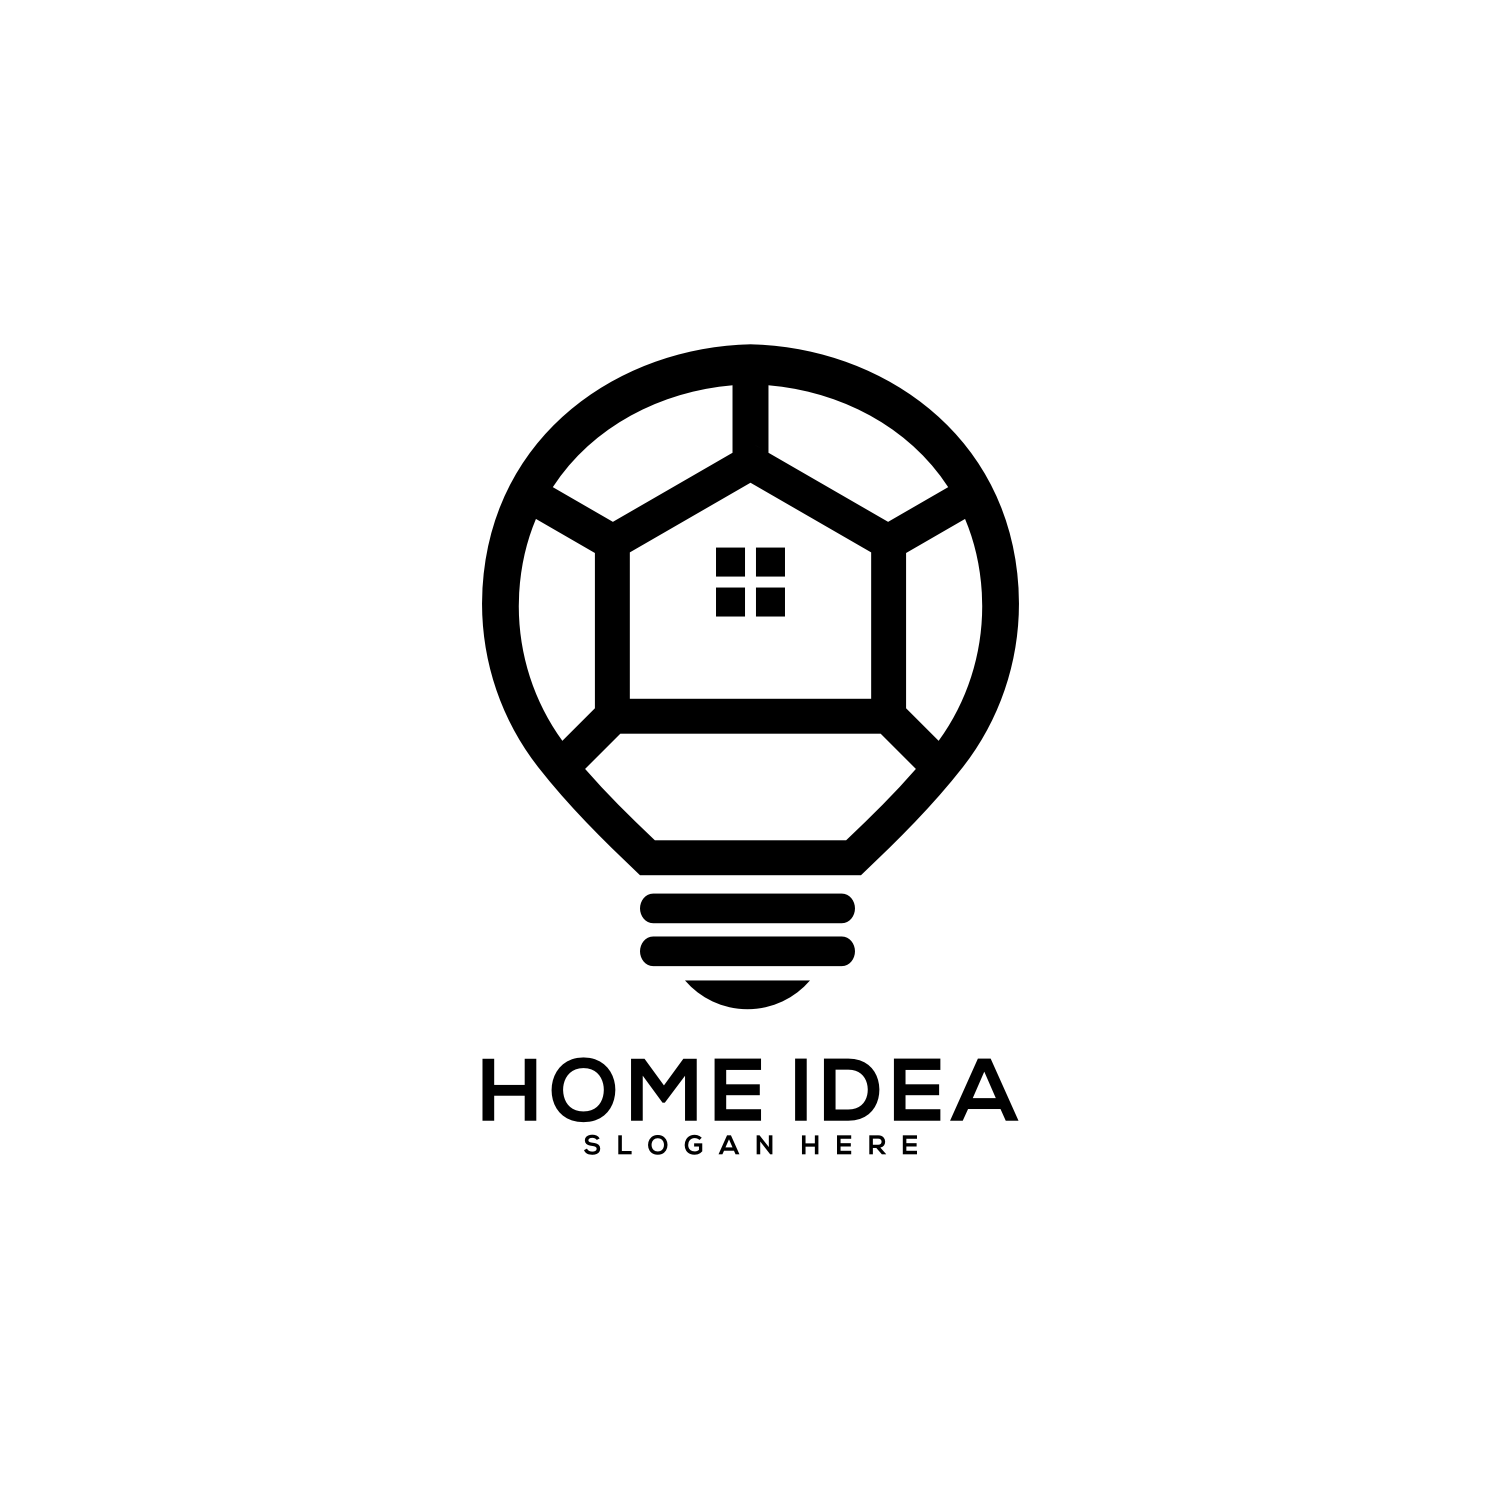 Home Idea Logo Vector Design presentation.